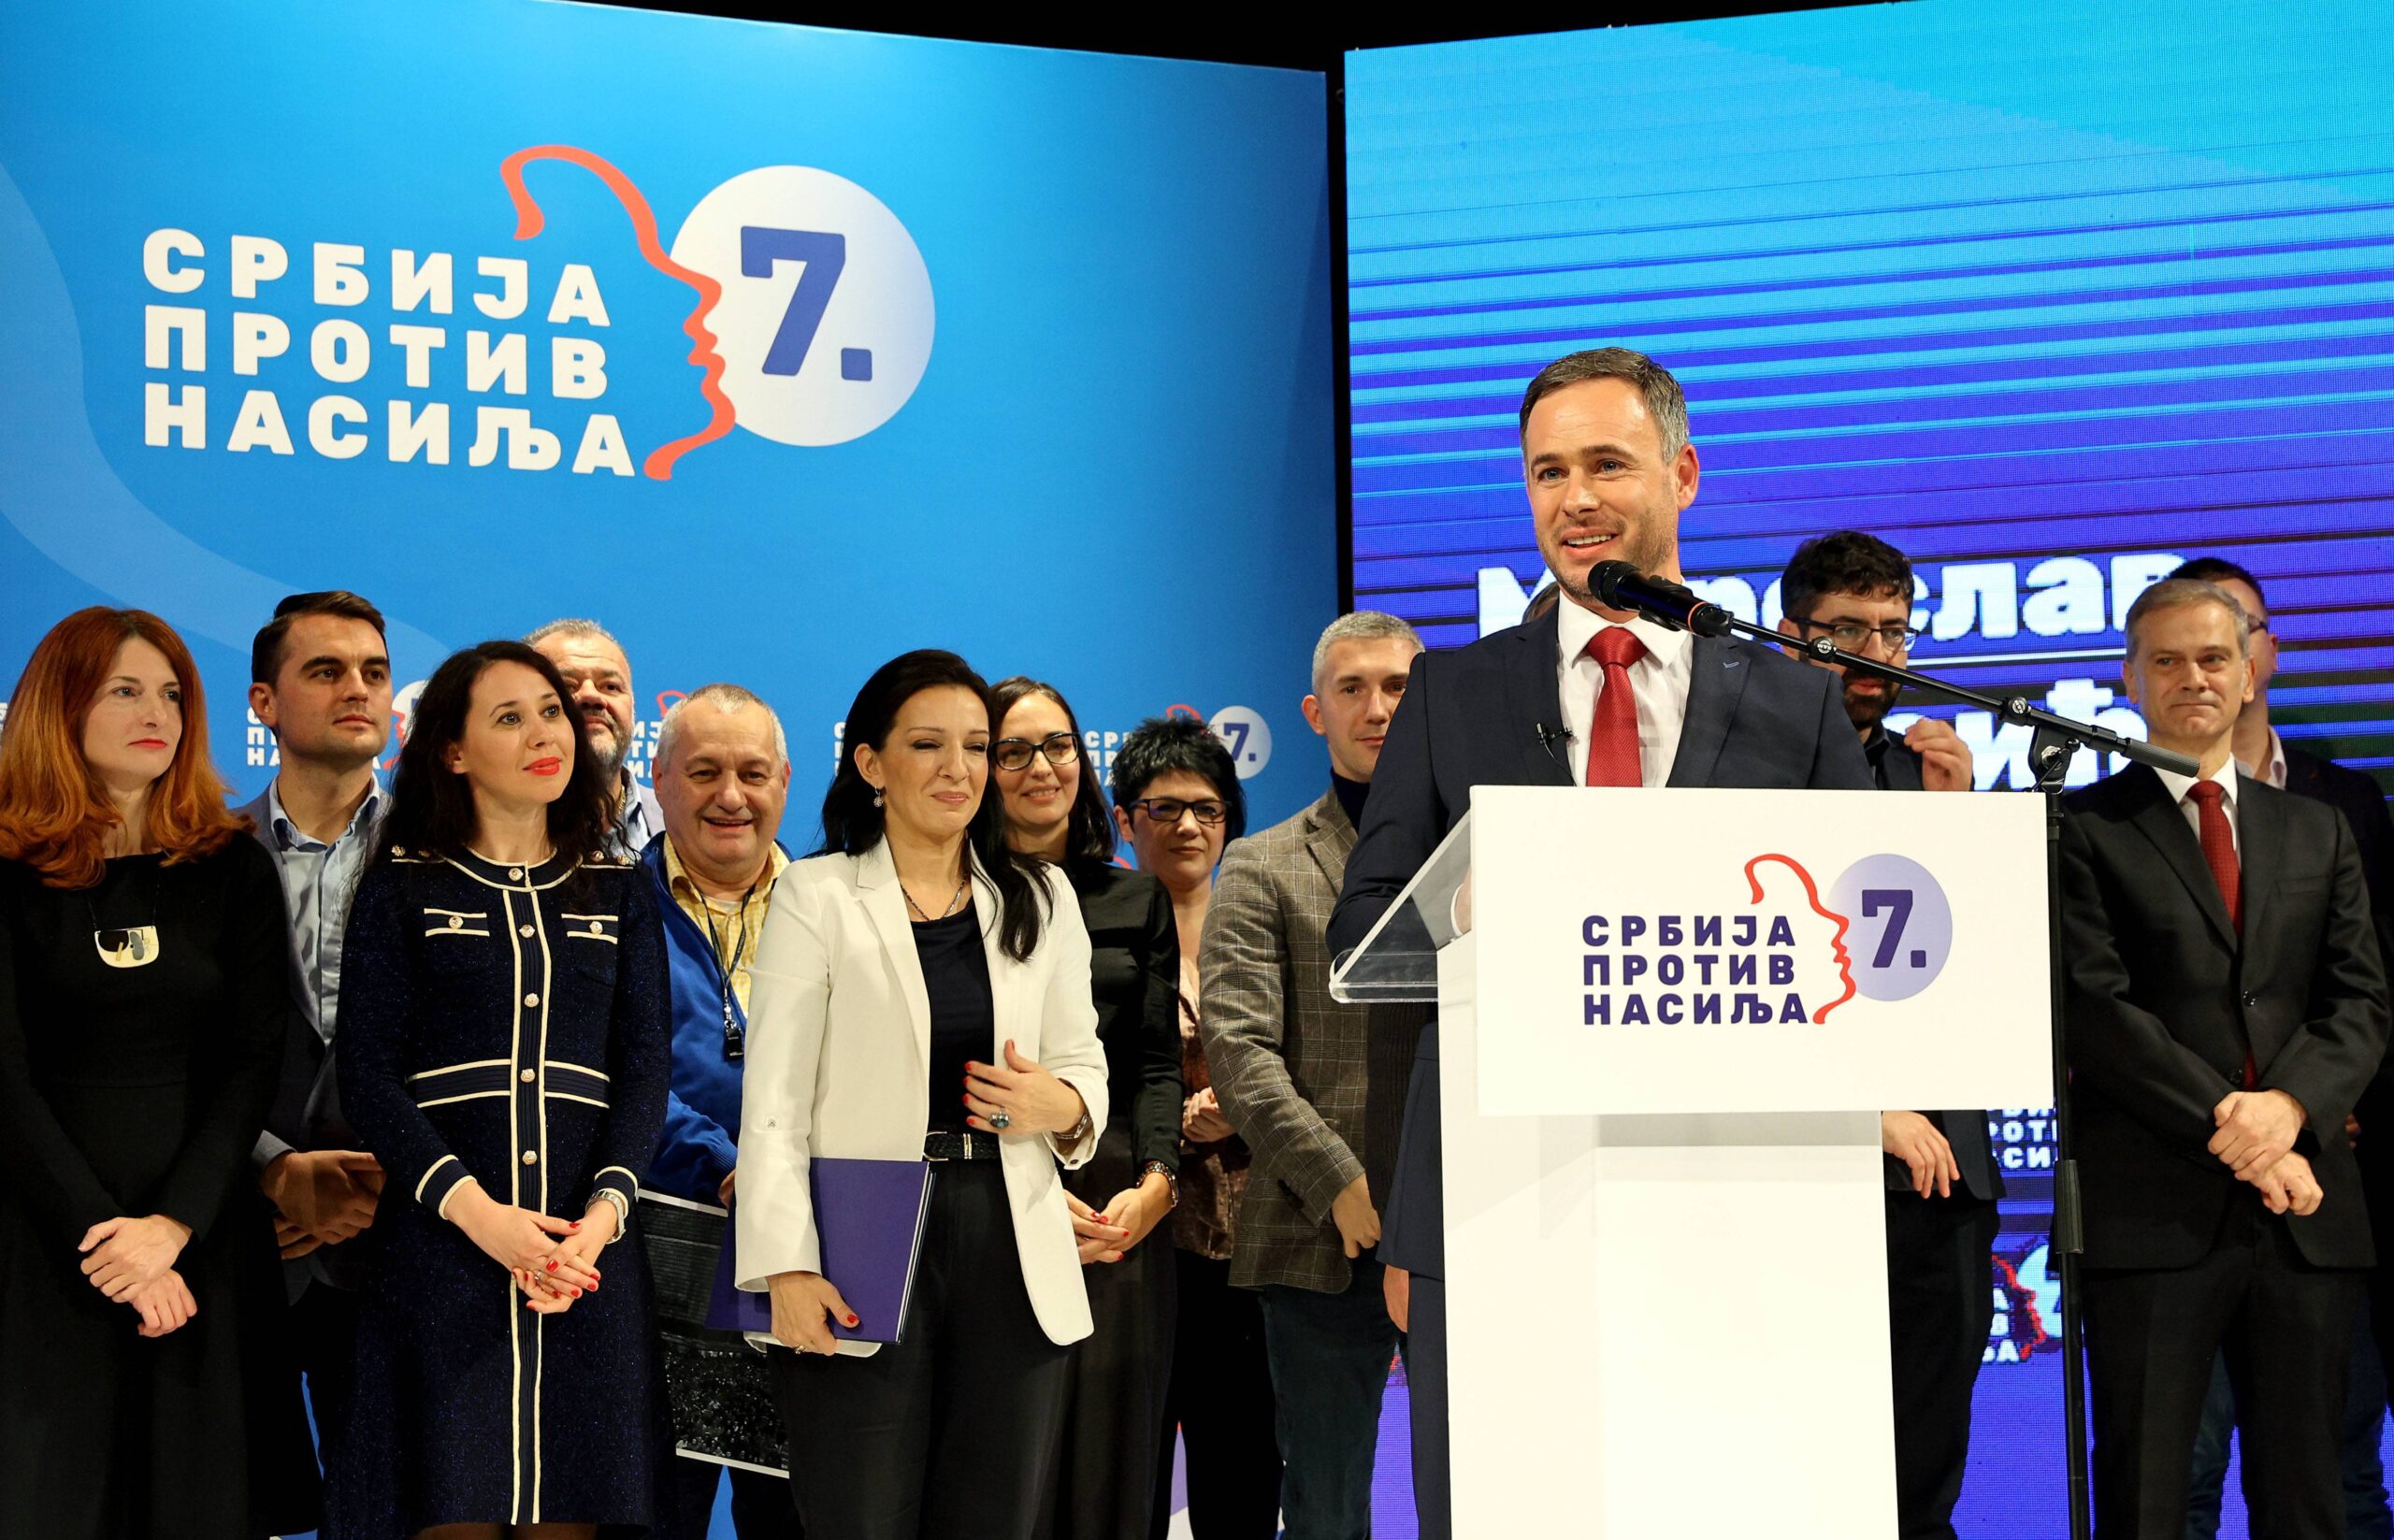 „Srbija protiv nasilja“ poslala Brnabić predloge za izmenu Ustava: Lokalni i beogradski izbori da se održe na jesen